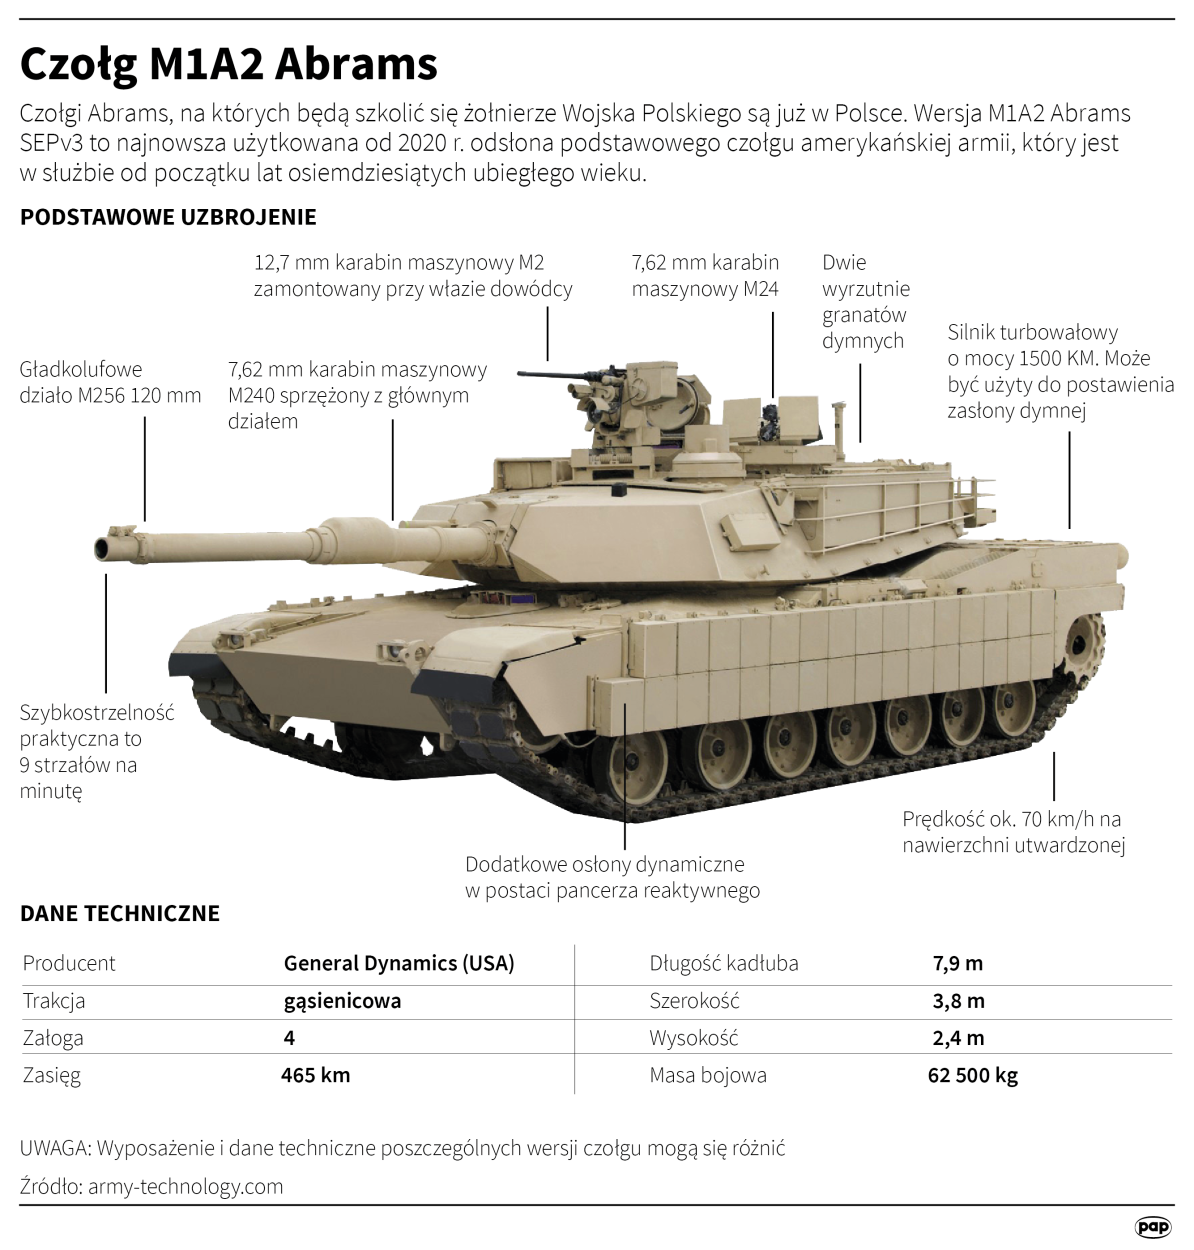 Czołg M1A2 Abrams, autorzy: PAP/Adam Ziemienowicz, Maciej Zieliński